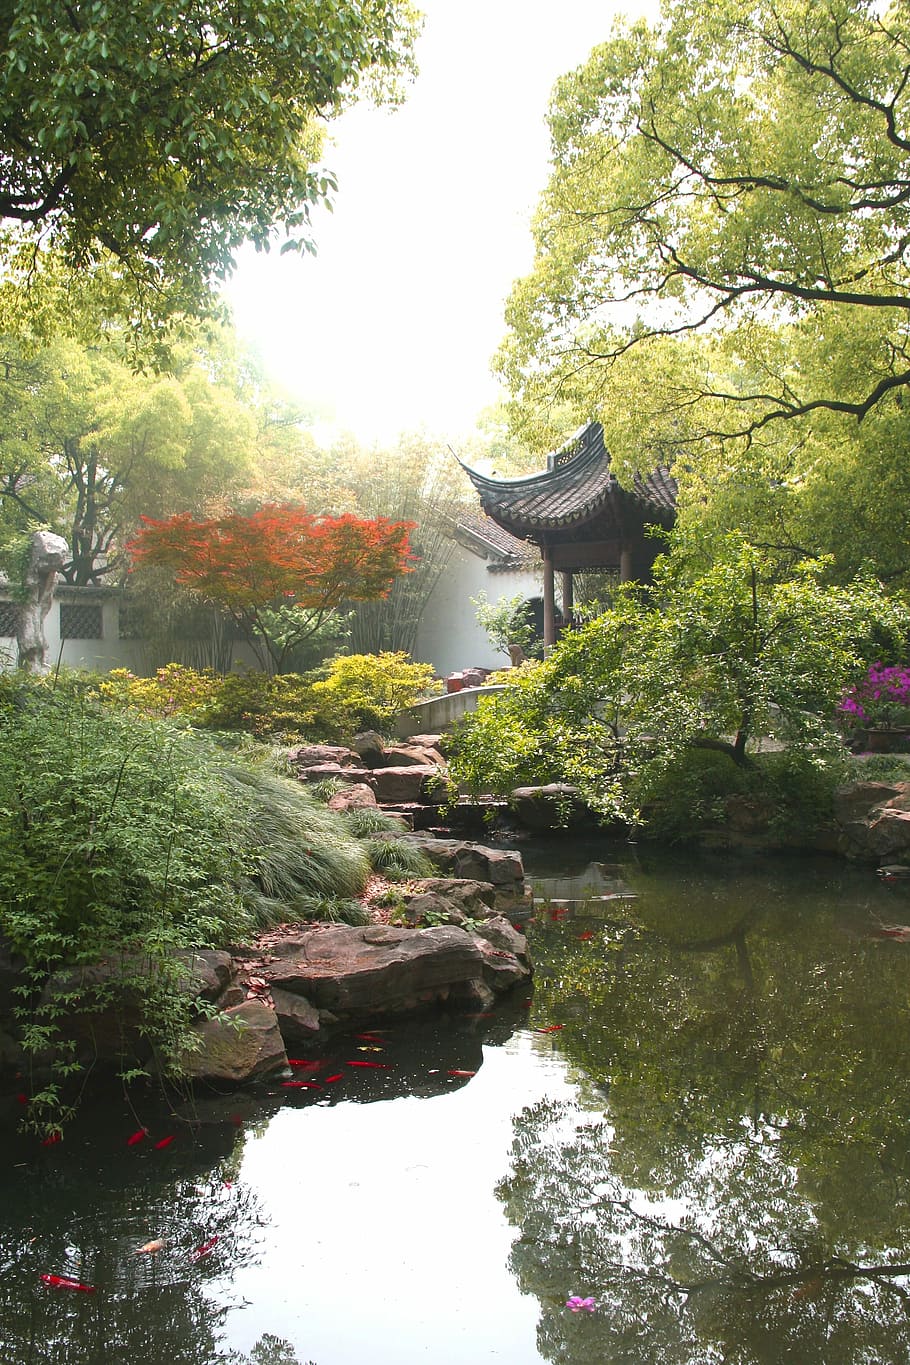 jichang garden landscape, Jichang Garden, landscape, Wuxi, Jiangsu, China, photos, public domain, asia, japan